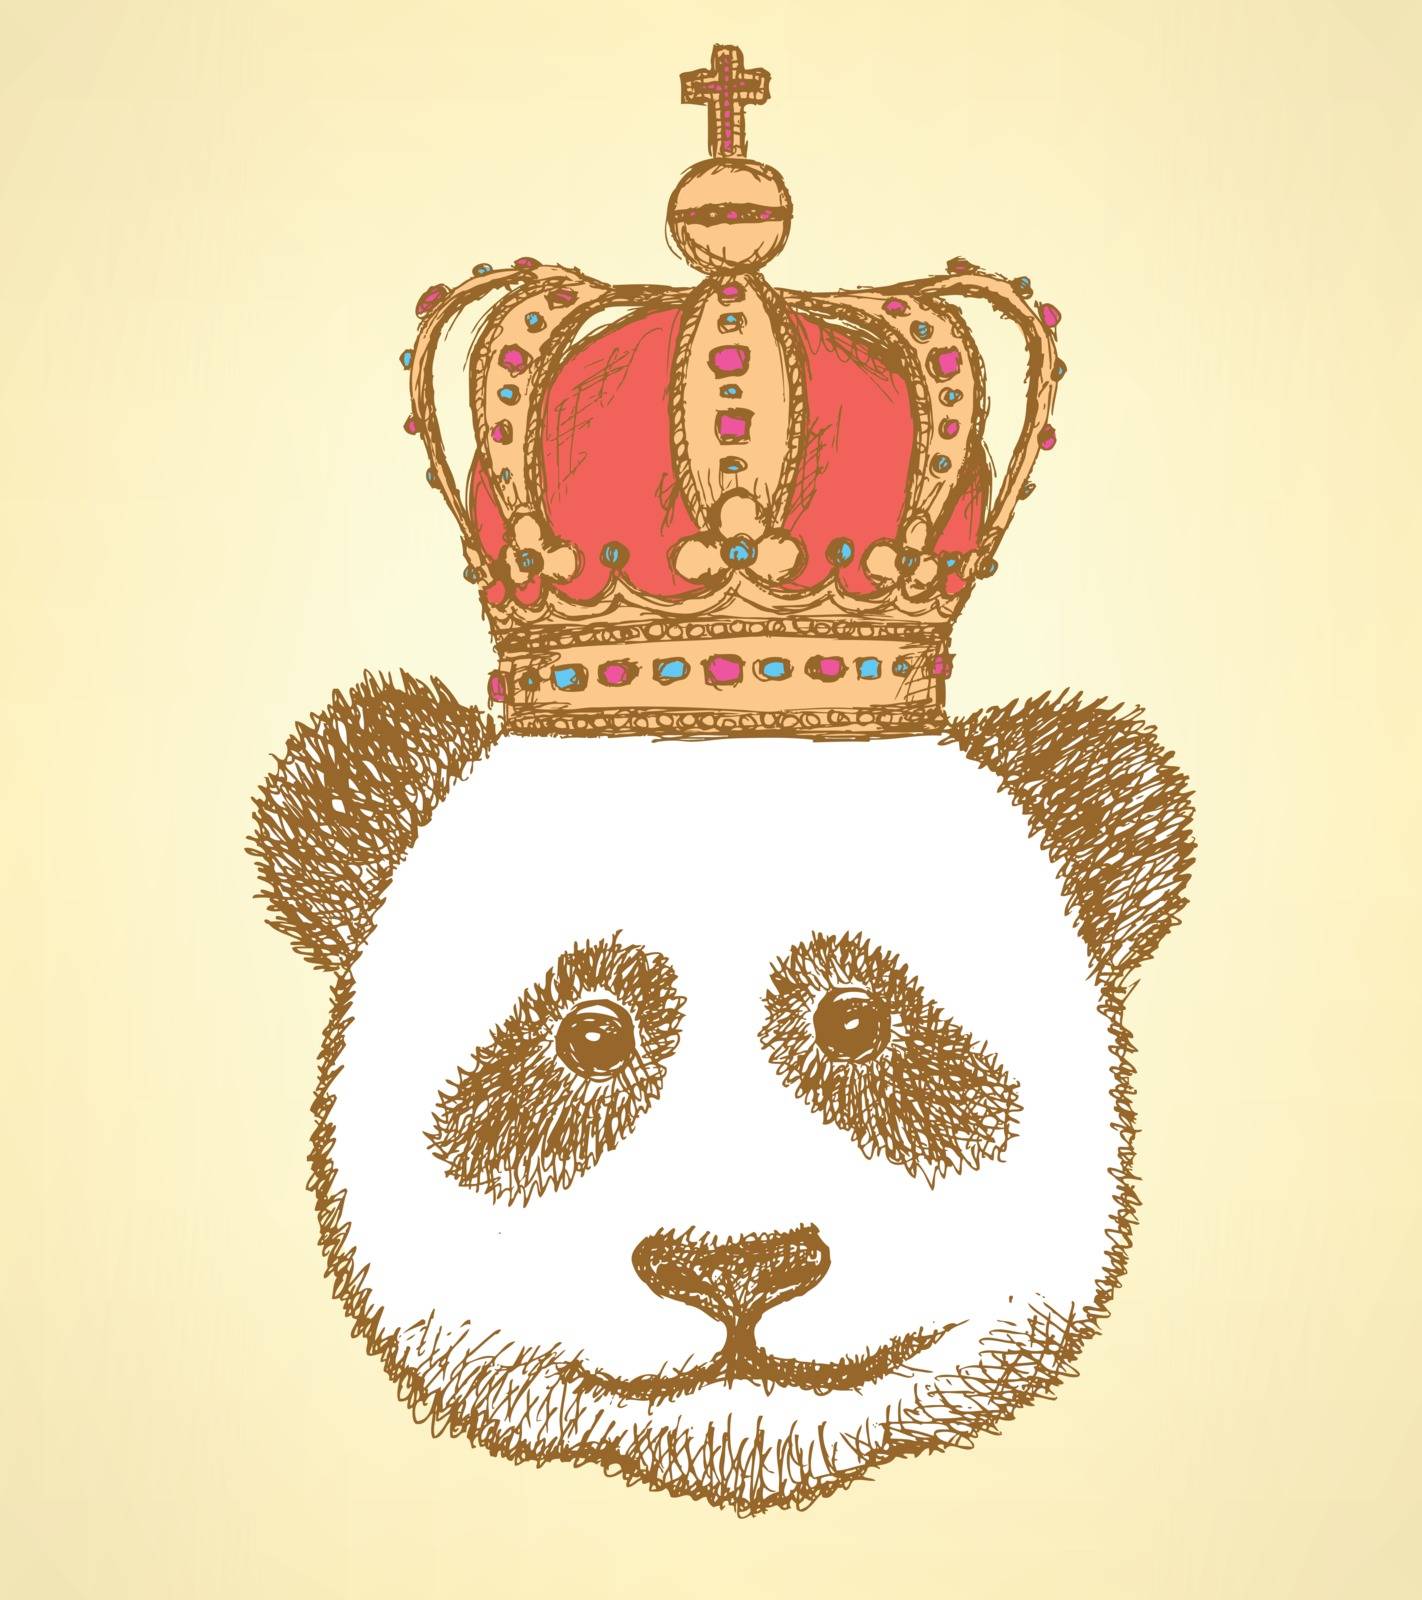 Sketch panda in crown, vintage background by KaLi